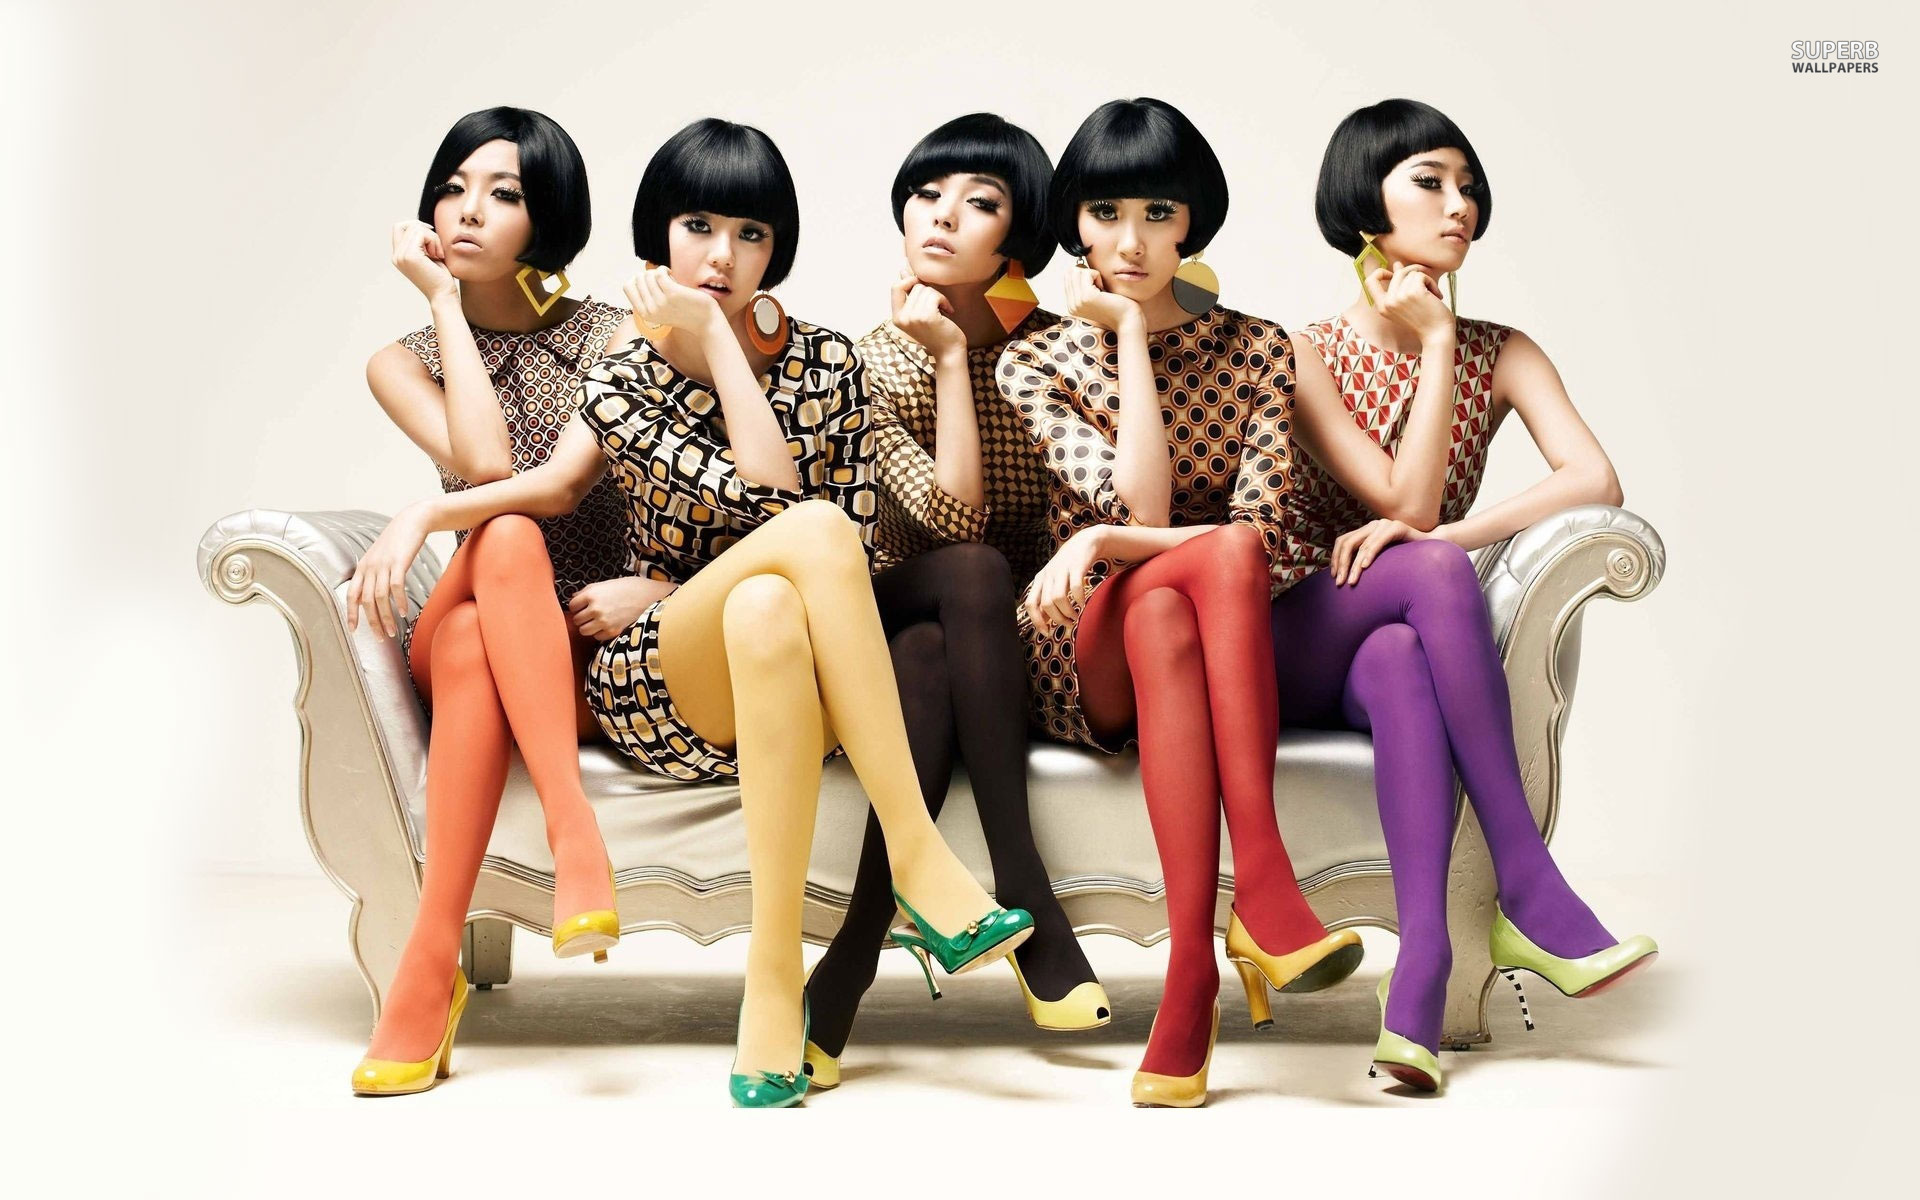 girls group wallpaper,skin,sitting,fashion,fun,black hair